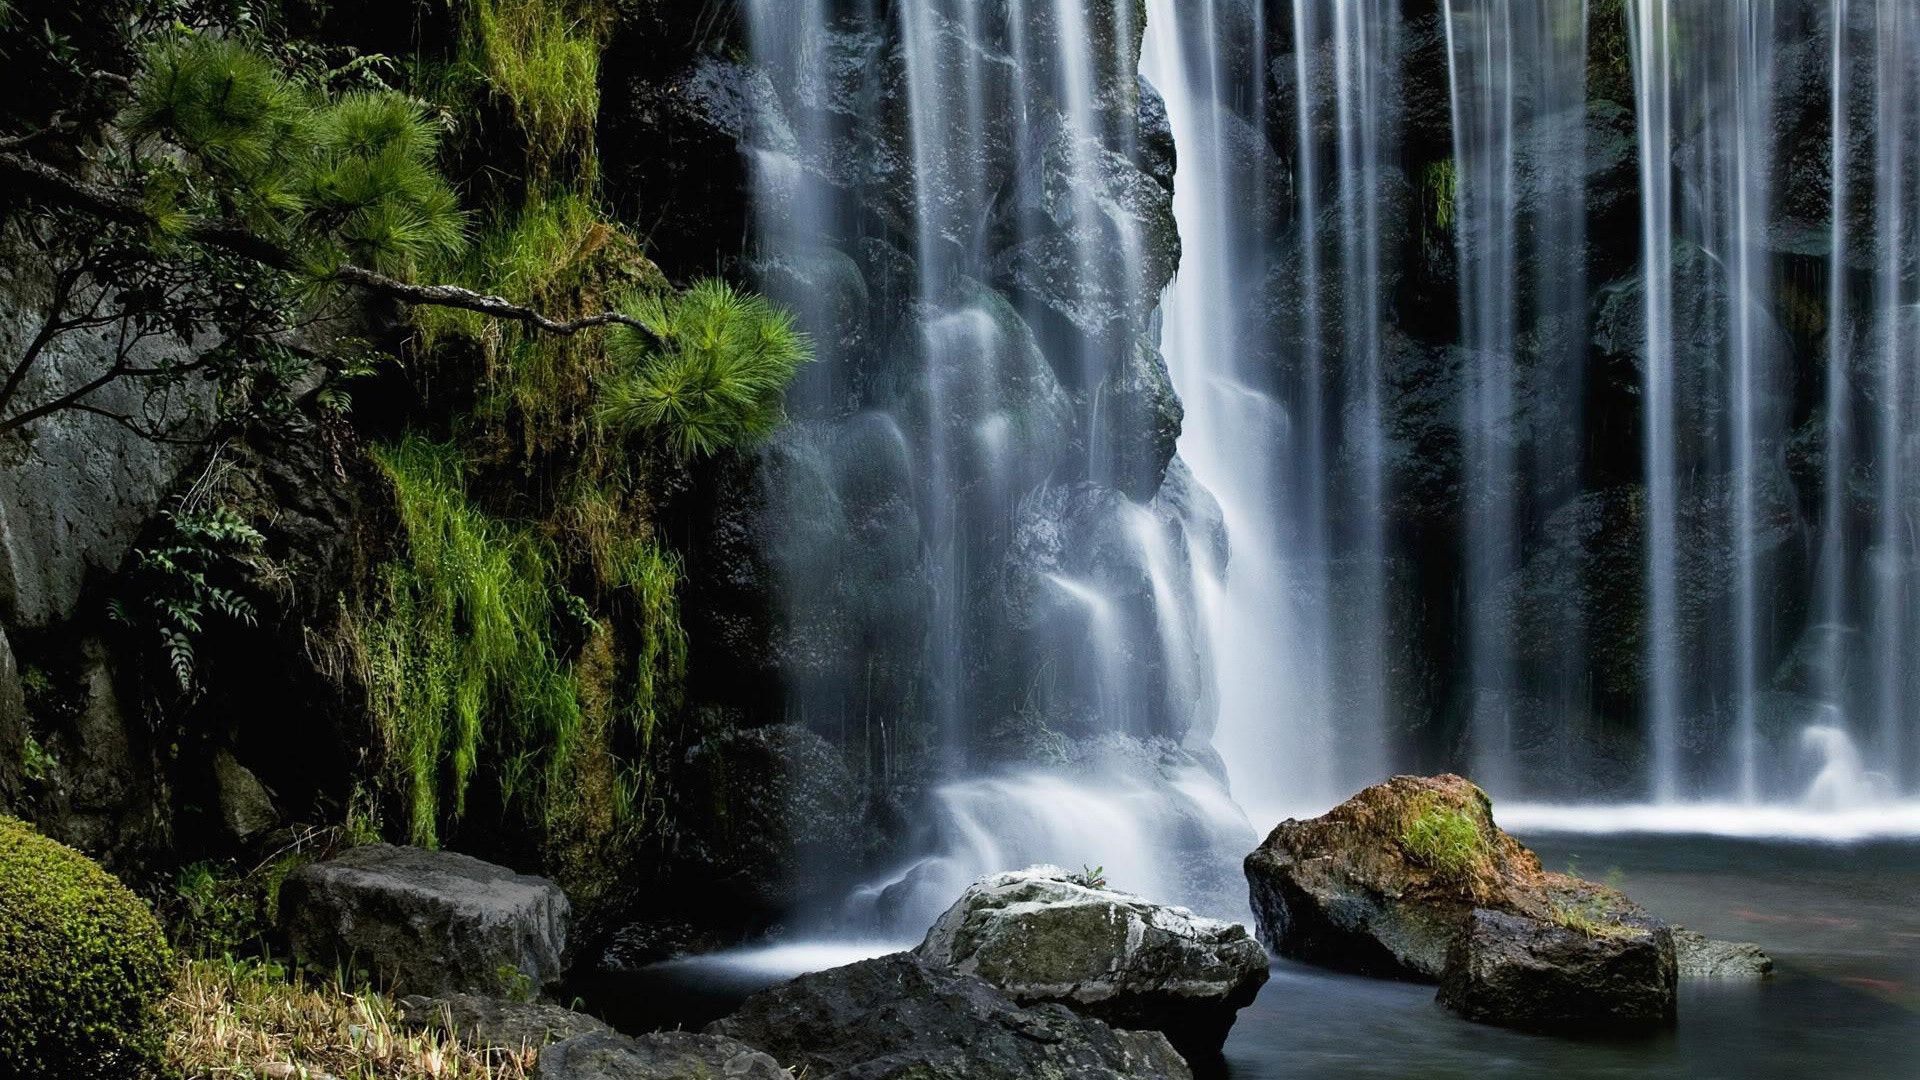 Thác nước là một trong những khung cảnh đẹp nhất thiên nhiên ban tặng cho chúng ta. Hãy chiêm ngưỡng những hình nền thác nước đẹp để cho mình tận hưởng cảm giác thư giãn, yên bình ngay tại không gian làm việc hay giải trí của bạn.